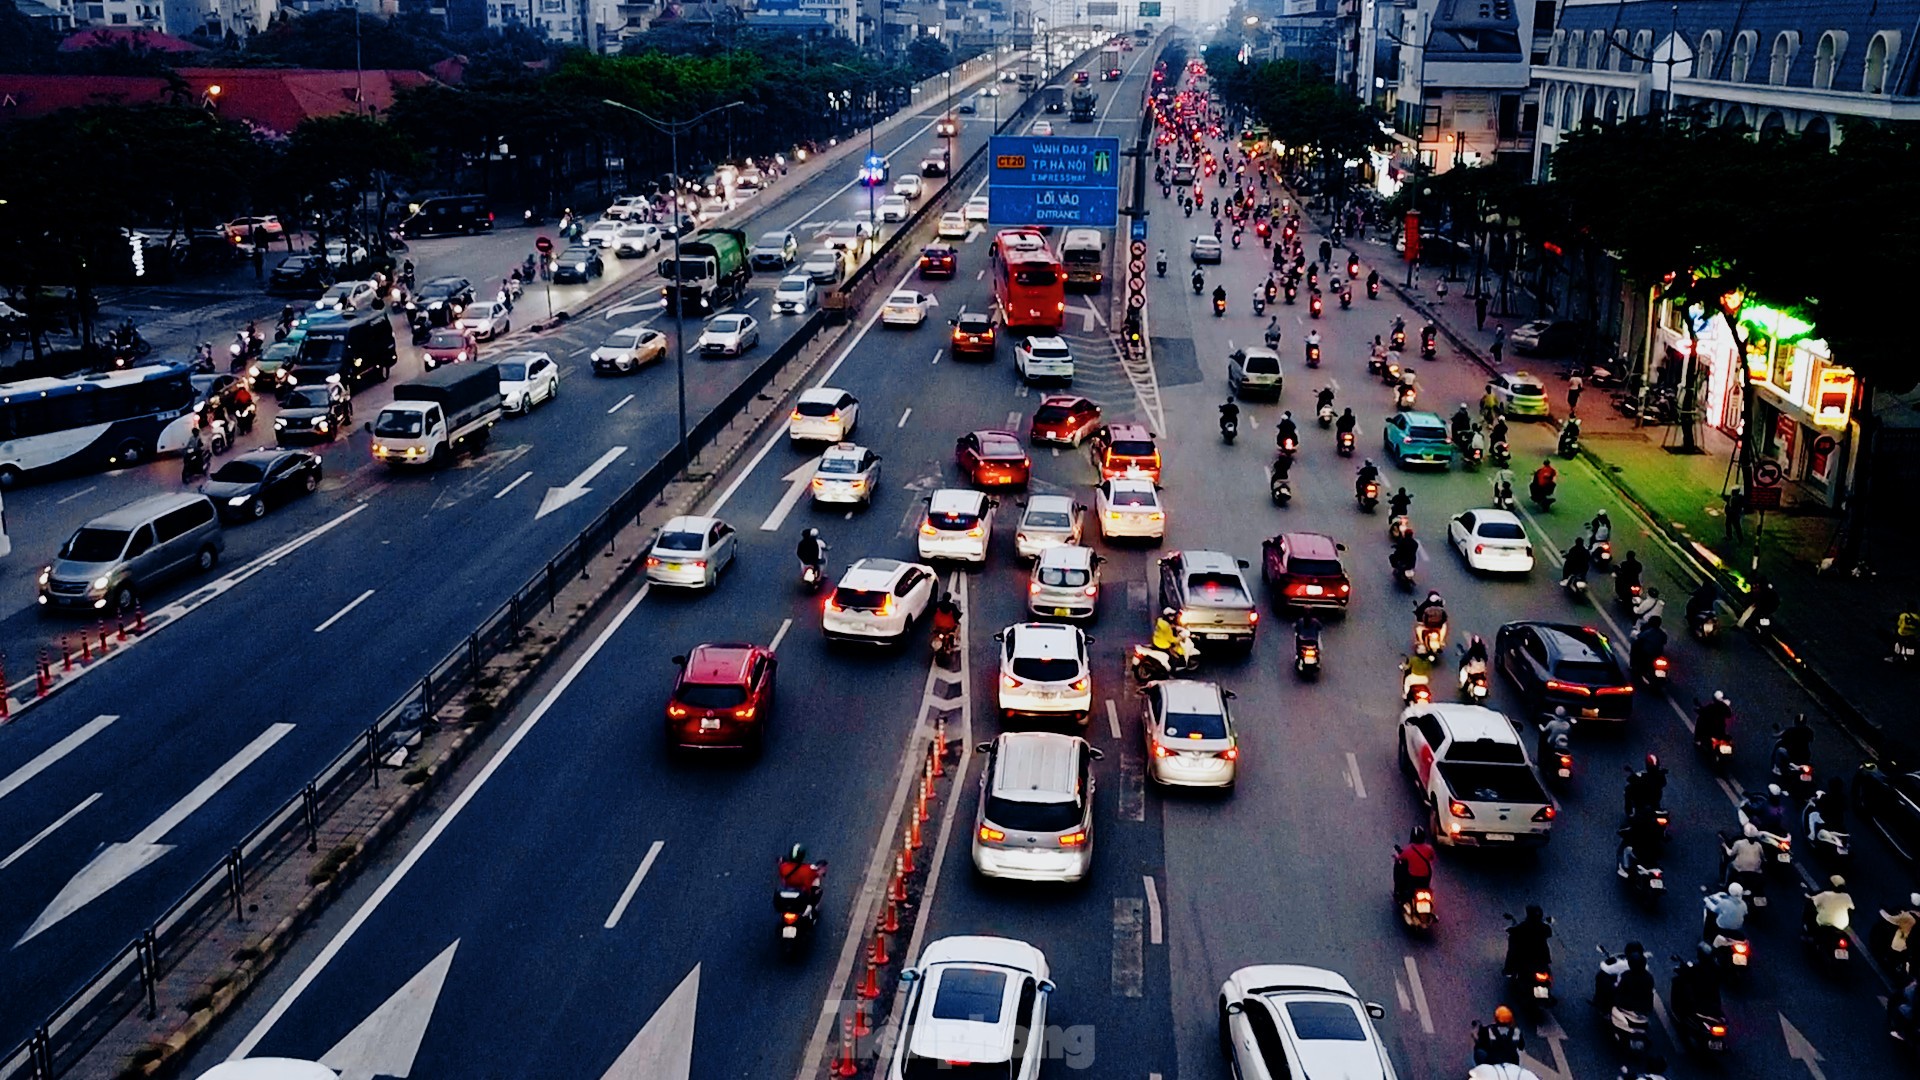 Thông xe cầu vượt Mai Dịch, vì sao giao thông vẫn hỗn loạn? ảnh 10